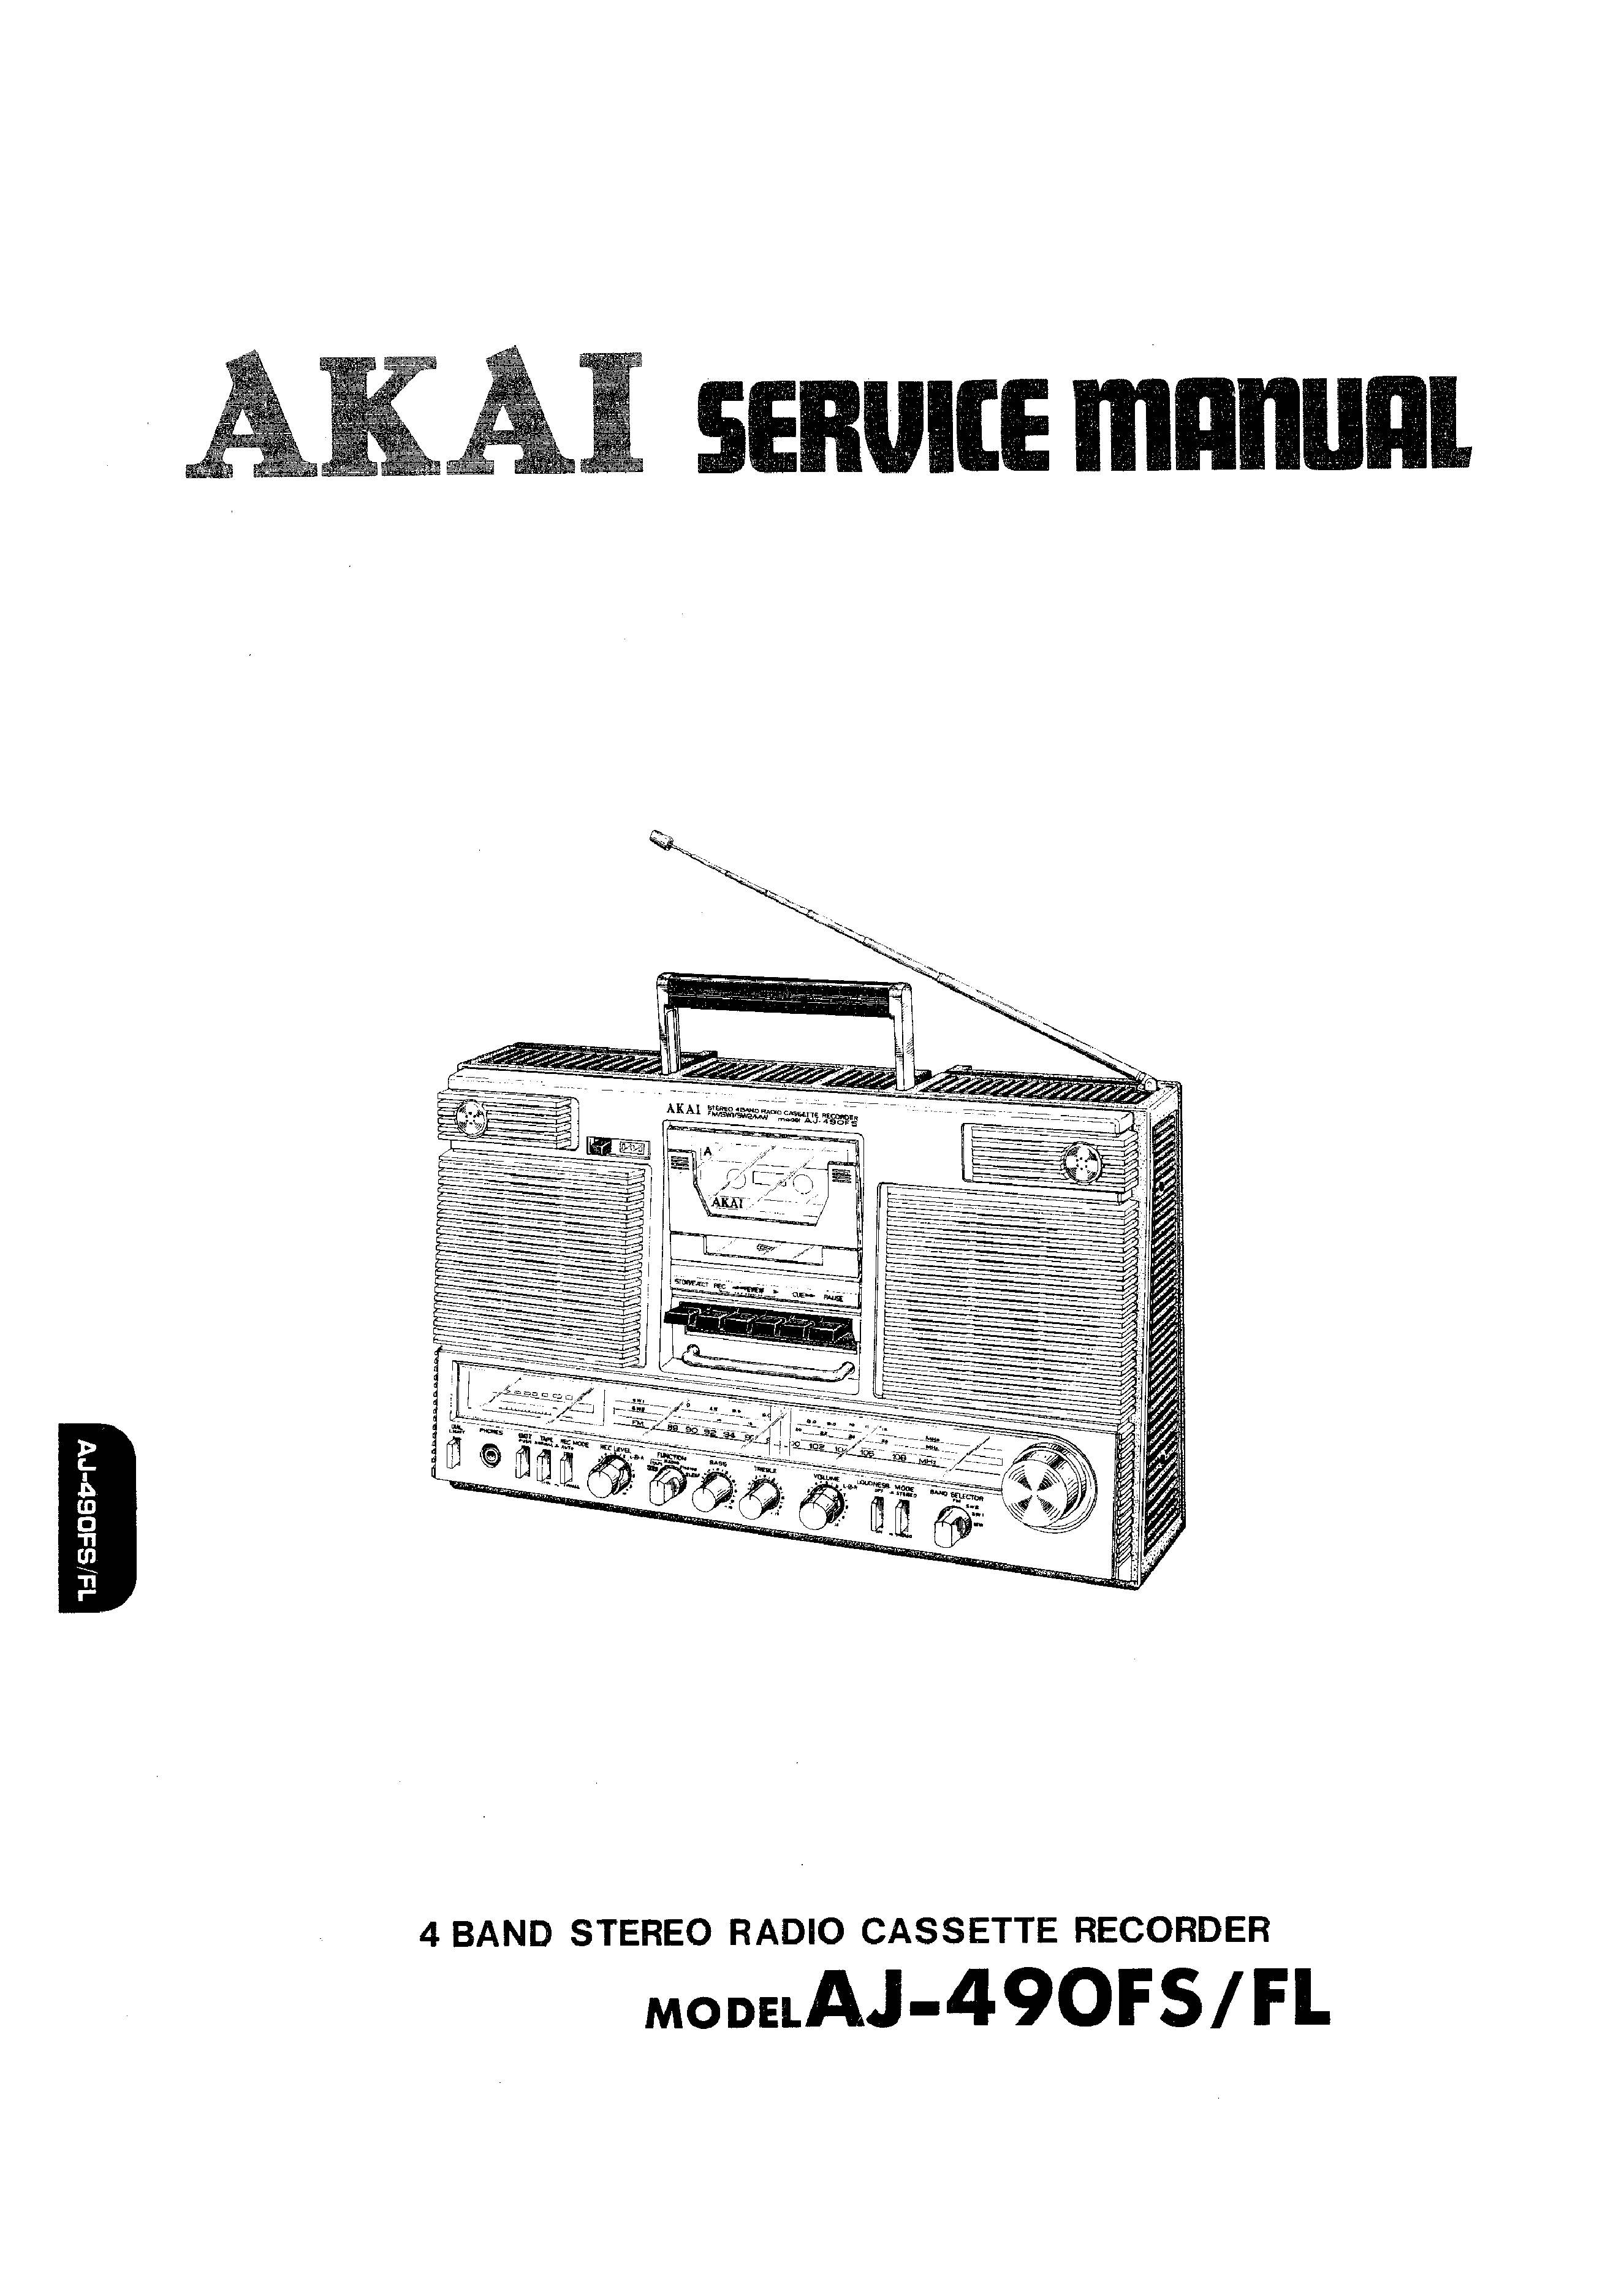 Original Service Manual esquema eléctrico Akai aj-202fs/fl 